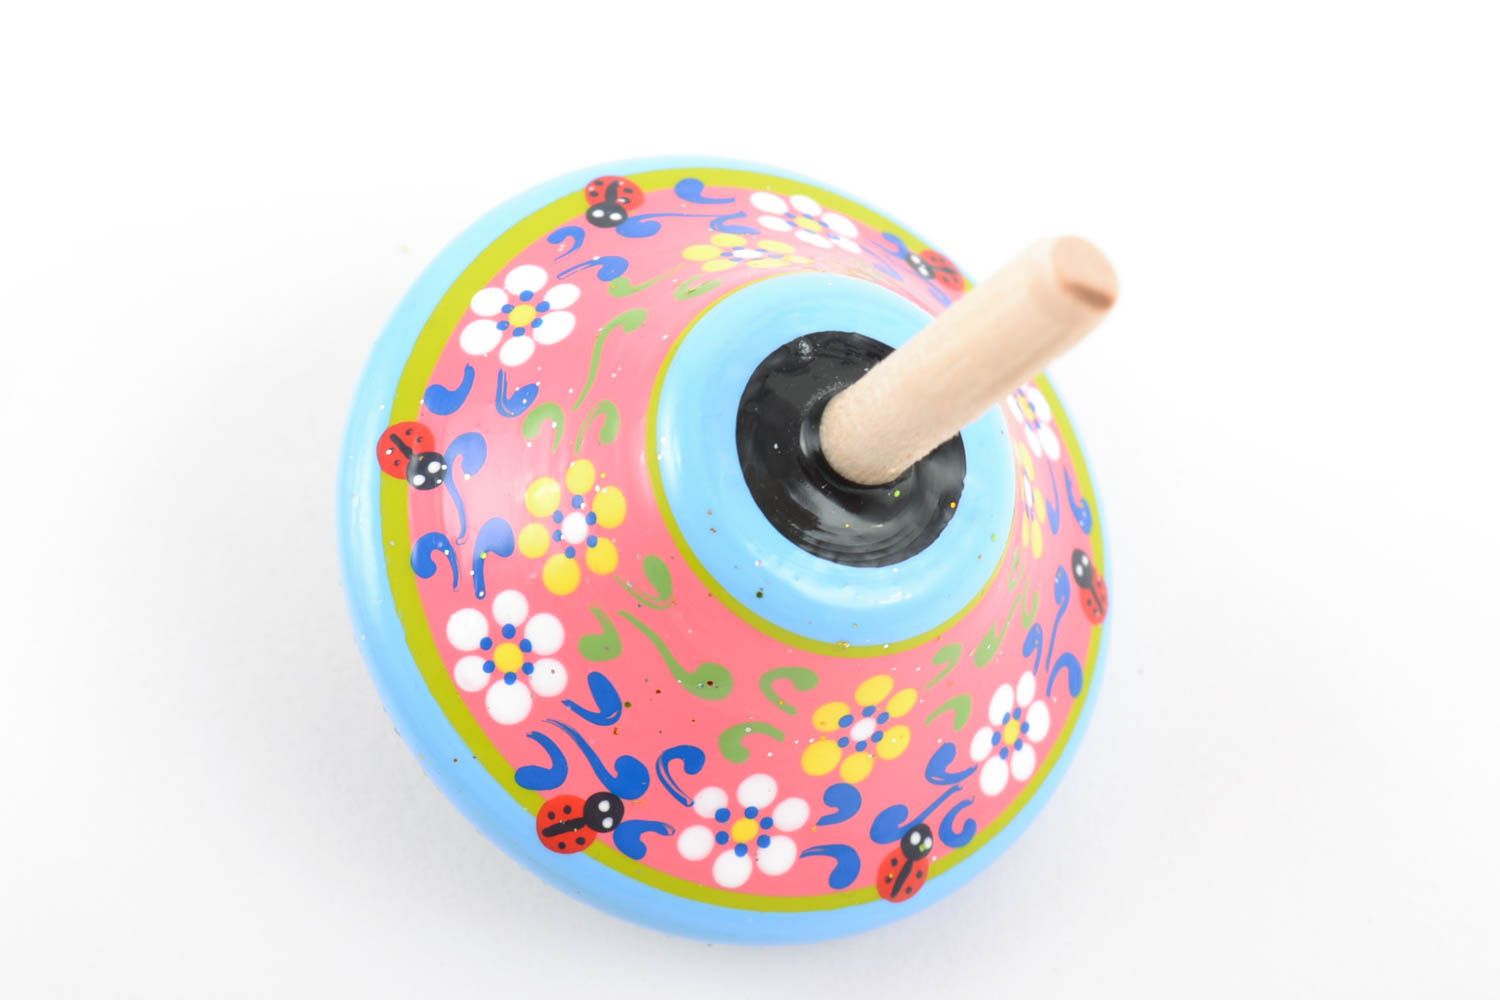 Handmade Kreisel Spielzeug aus Holz mit Ökofarben bemalt schön foto 3